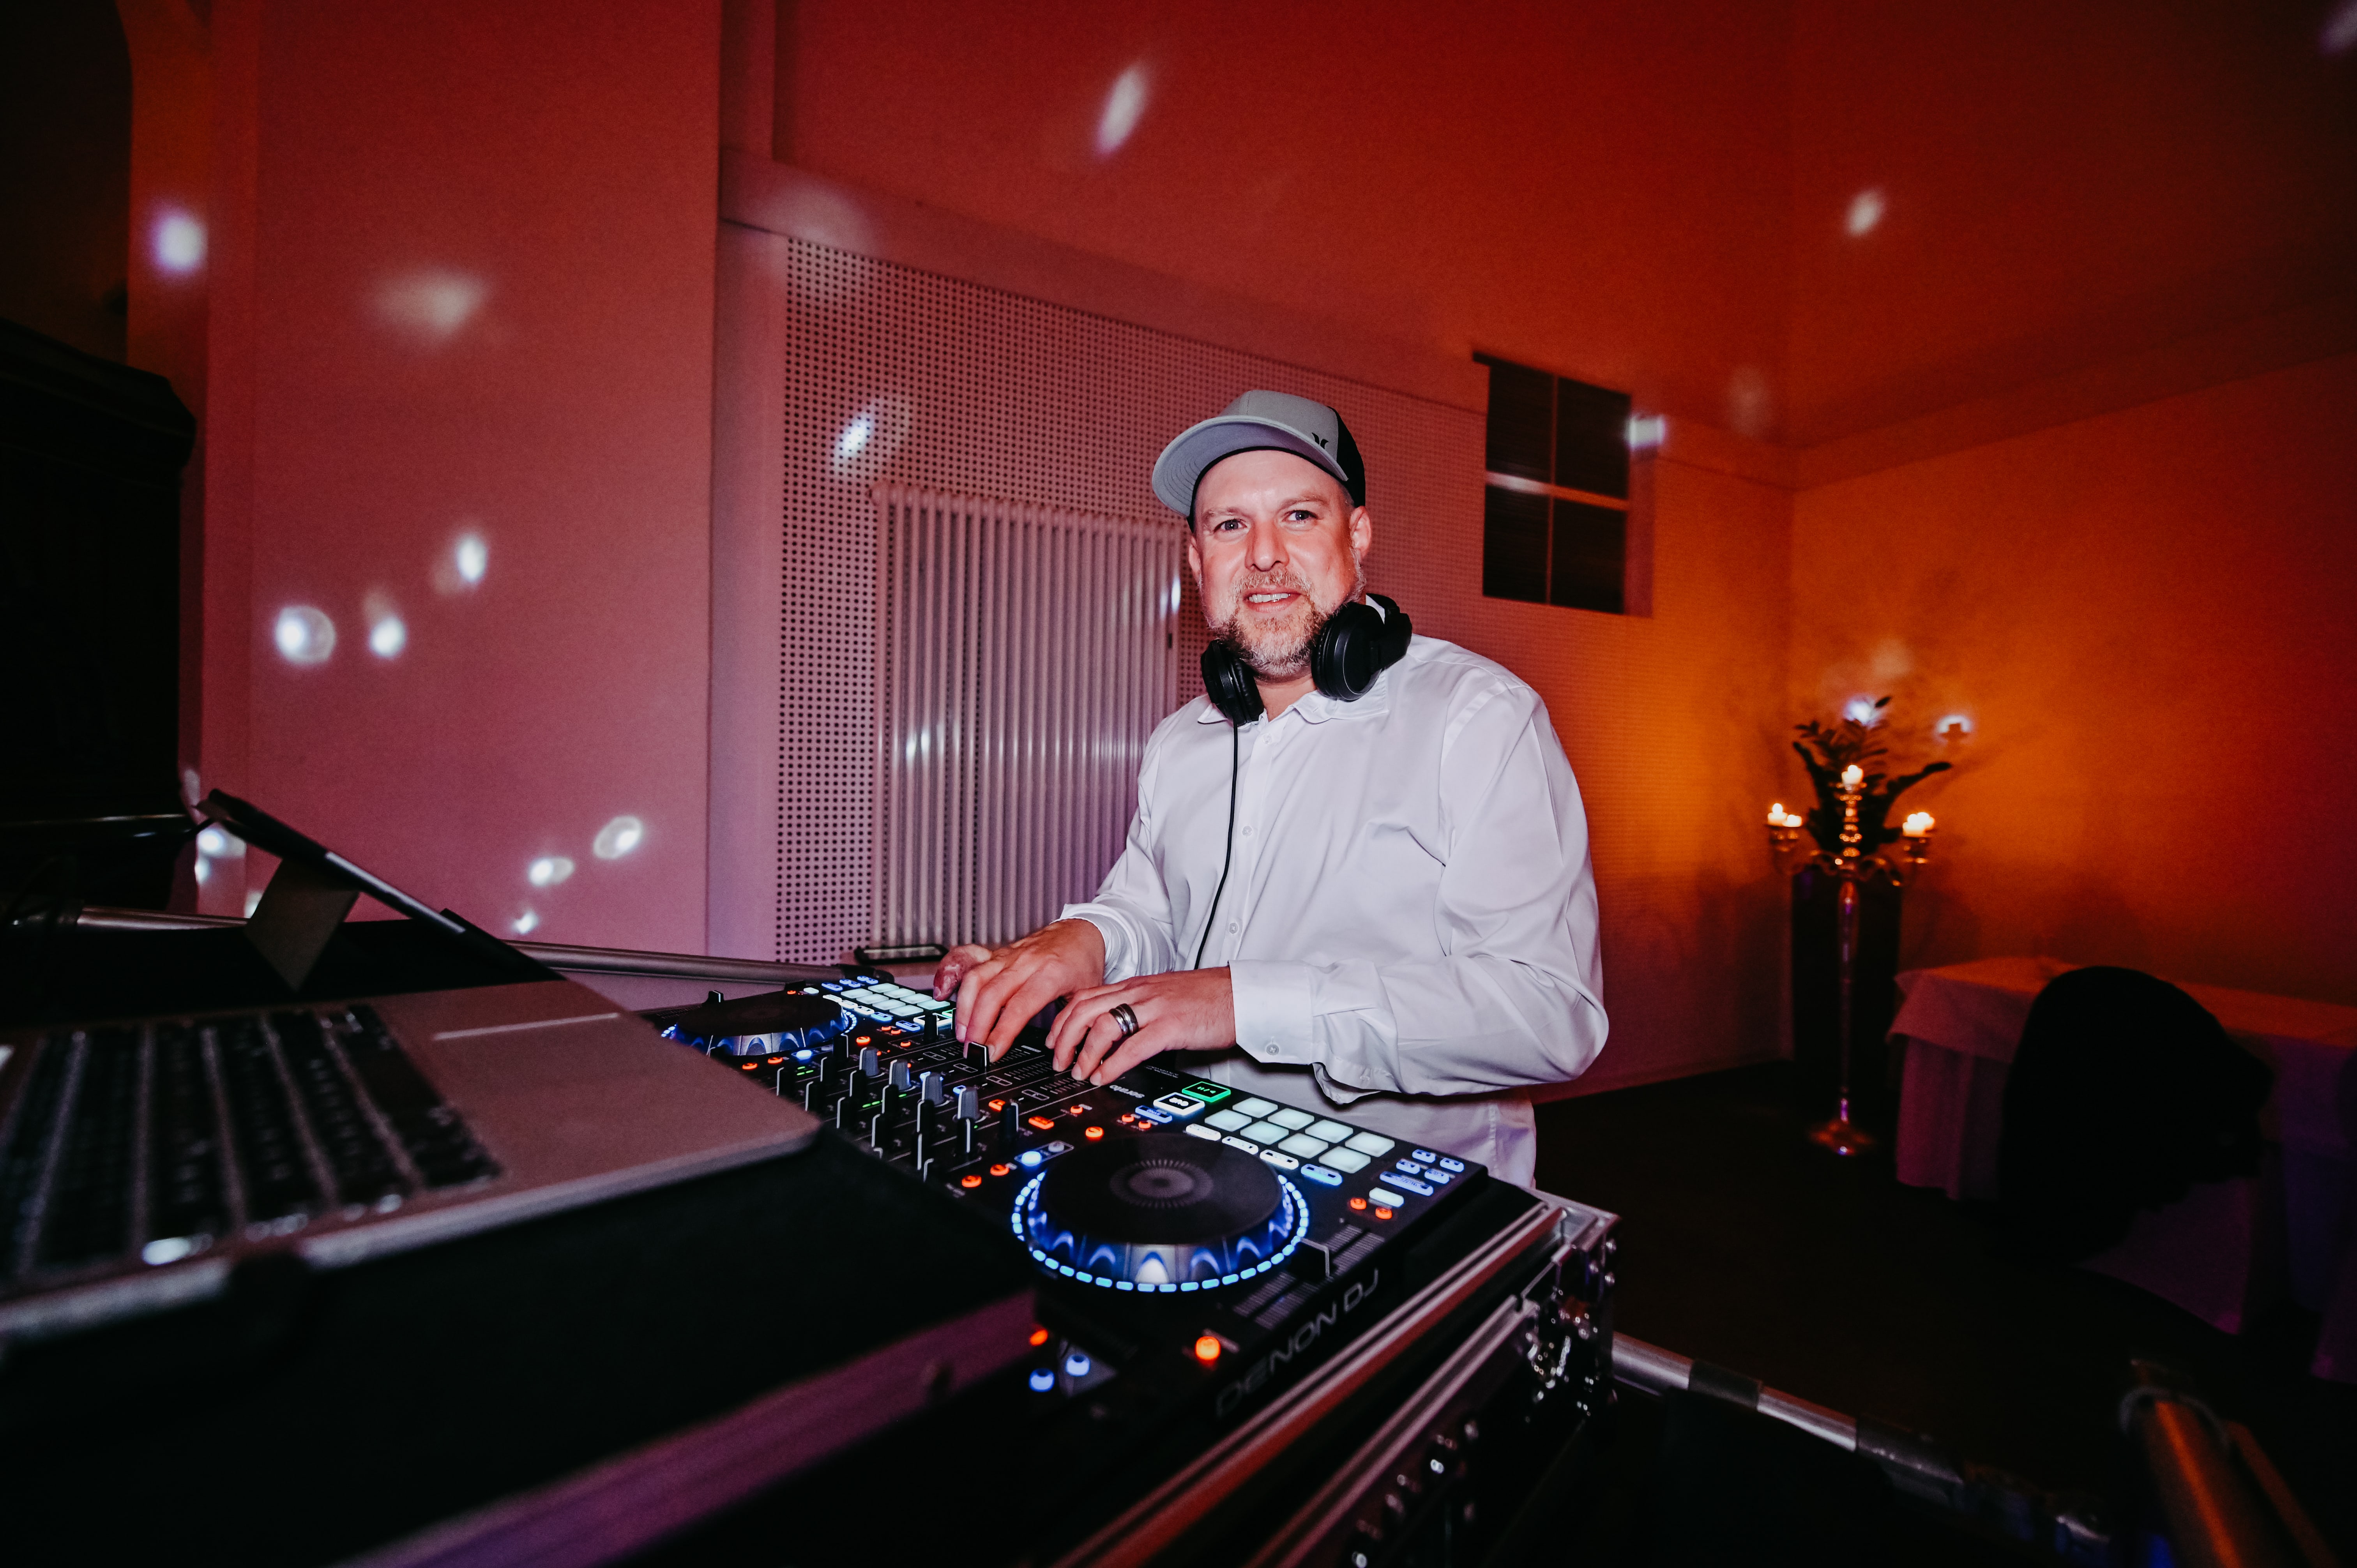 Hochzeits-DJ Rene Frankenfeld - ein echtes Allround-Talent